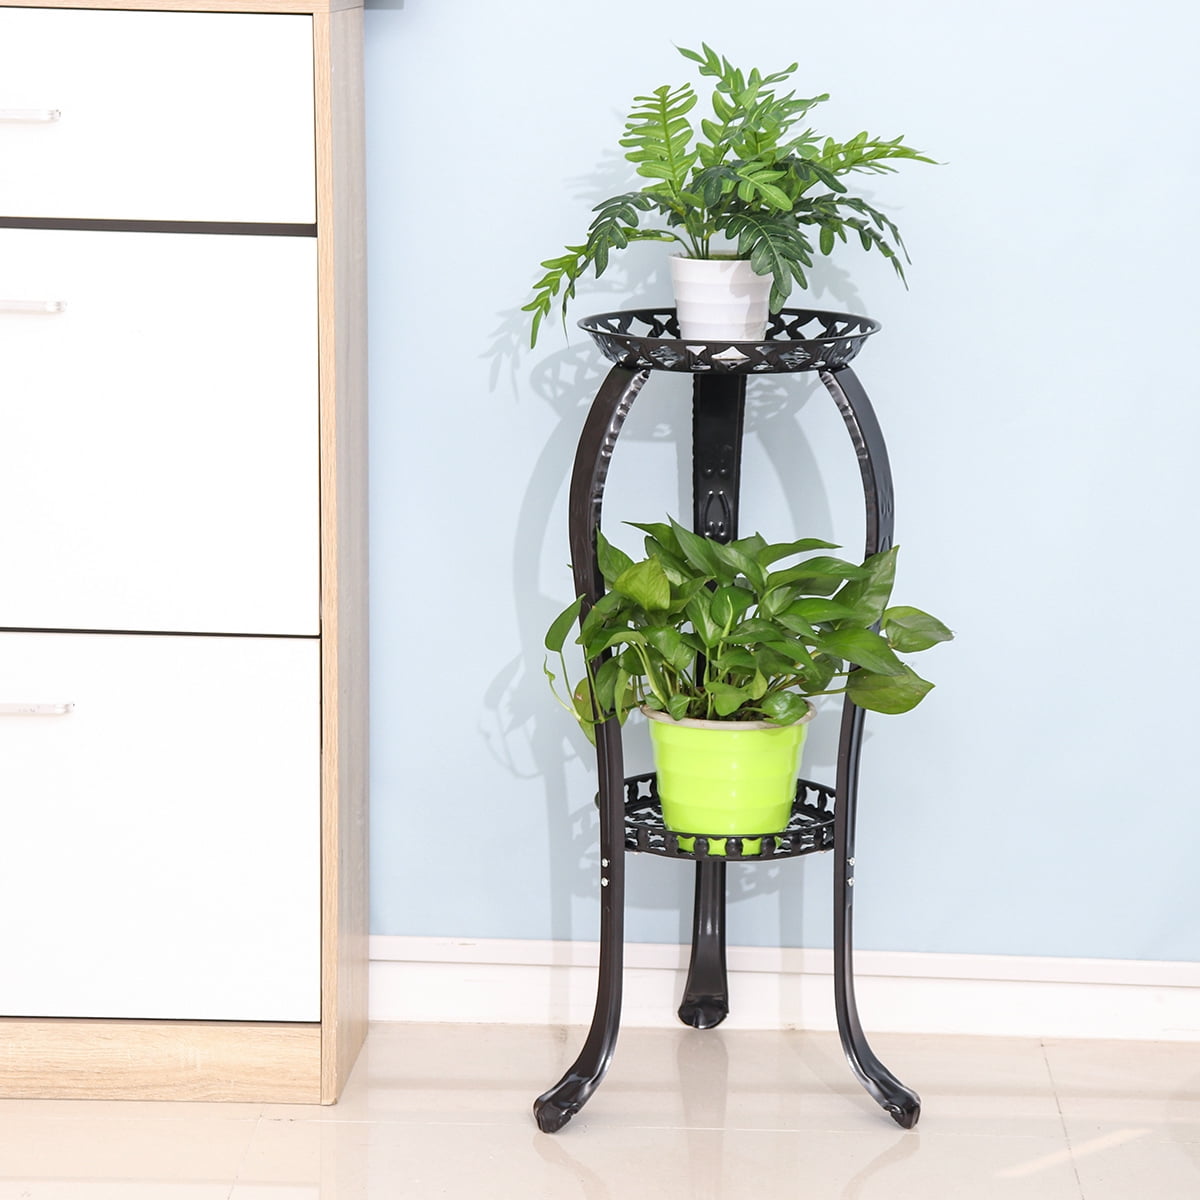 DAZONE Demountable Metal 2 Tiers Plant Rack Indoor Floor Model Potted Plant Stand Black 